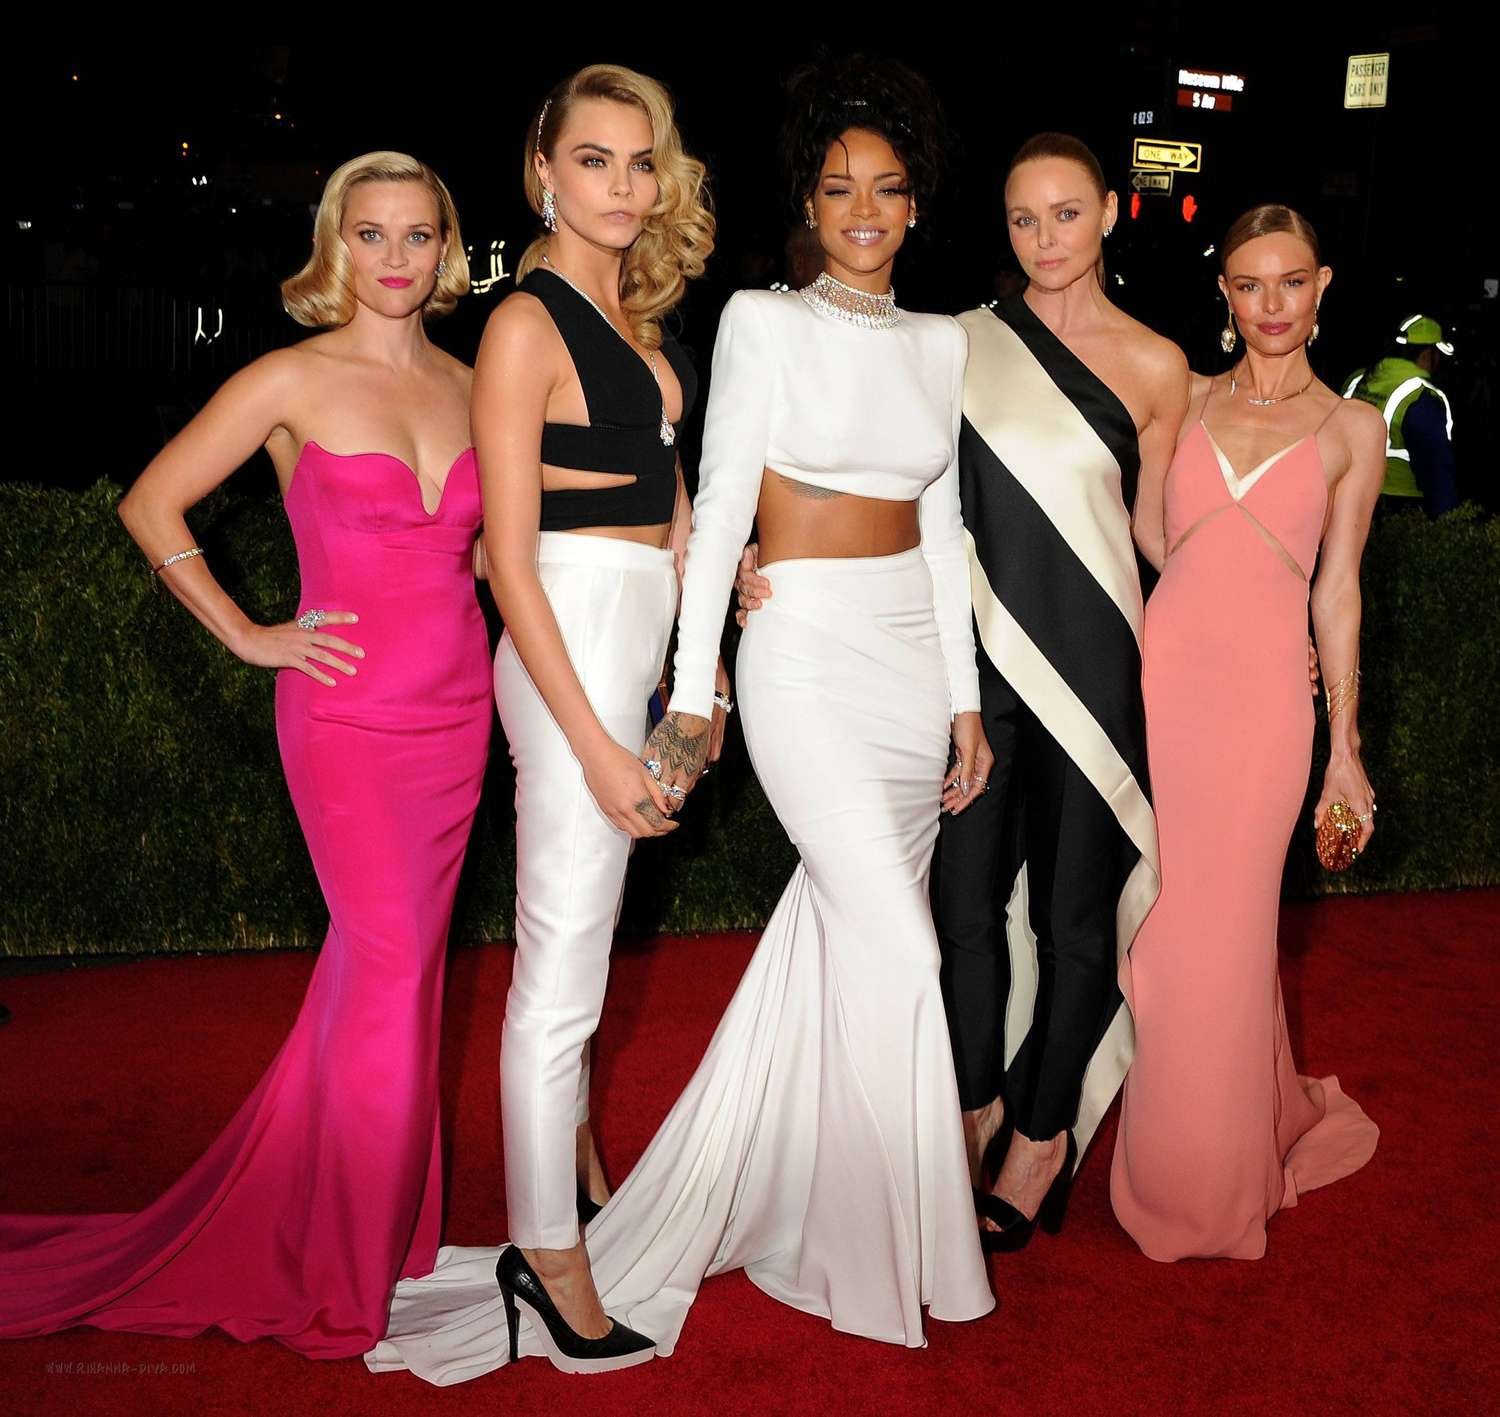 Celeb forum. Cara Delevingne at met Gala 2014 in New York. Риз Уизерспун на красной дорожке. Платье для девушки Голливуд. Несколько девушек в вечерних платьях.